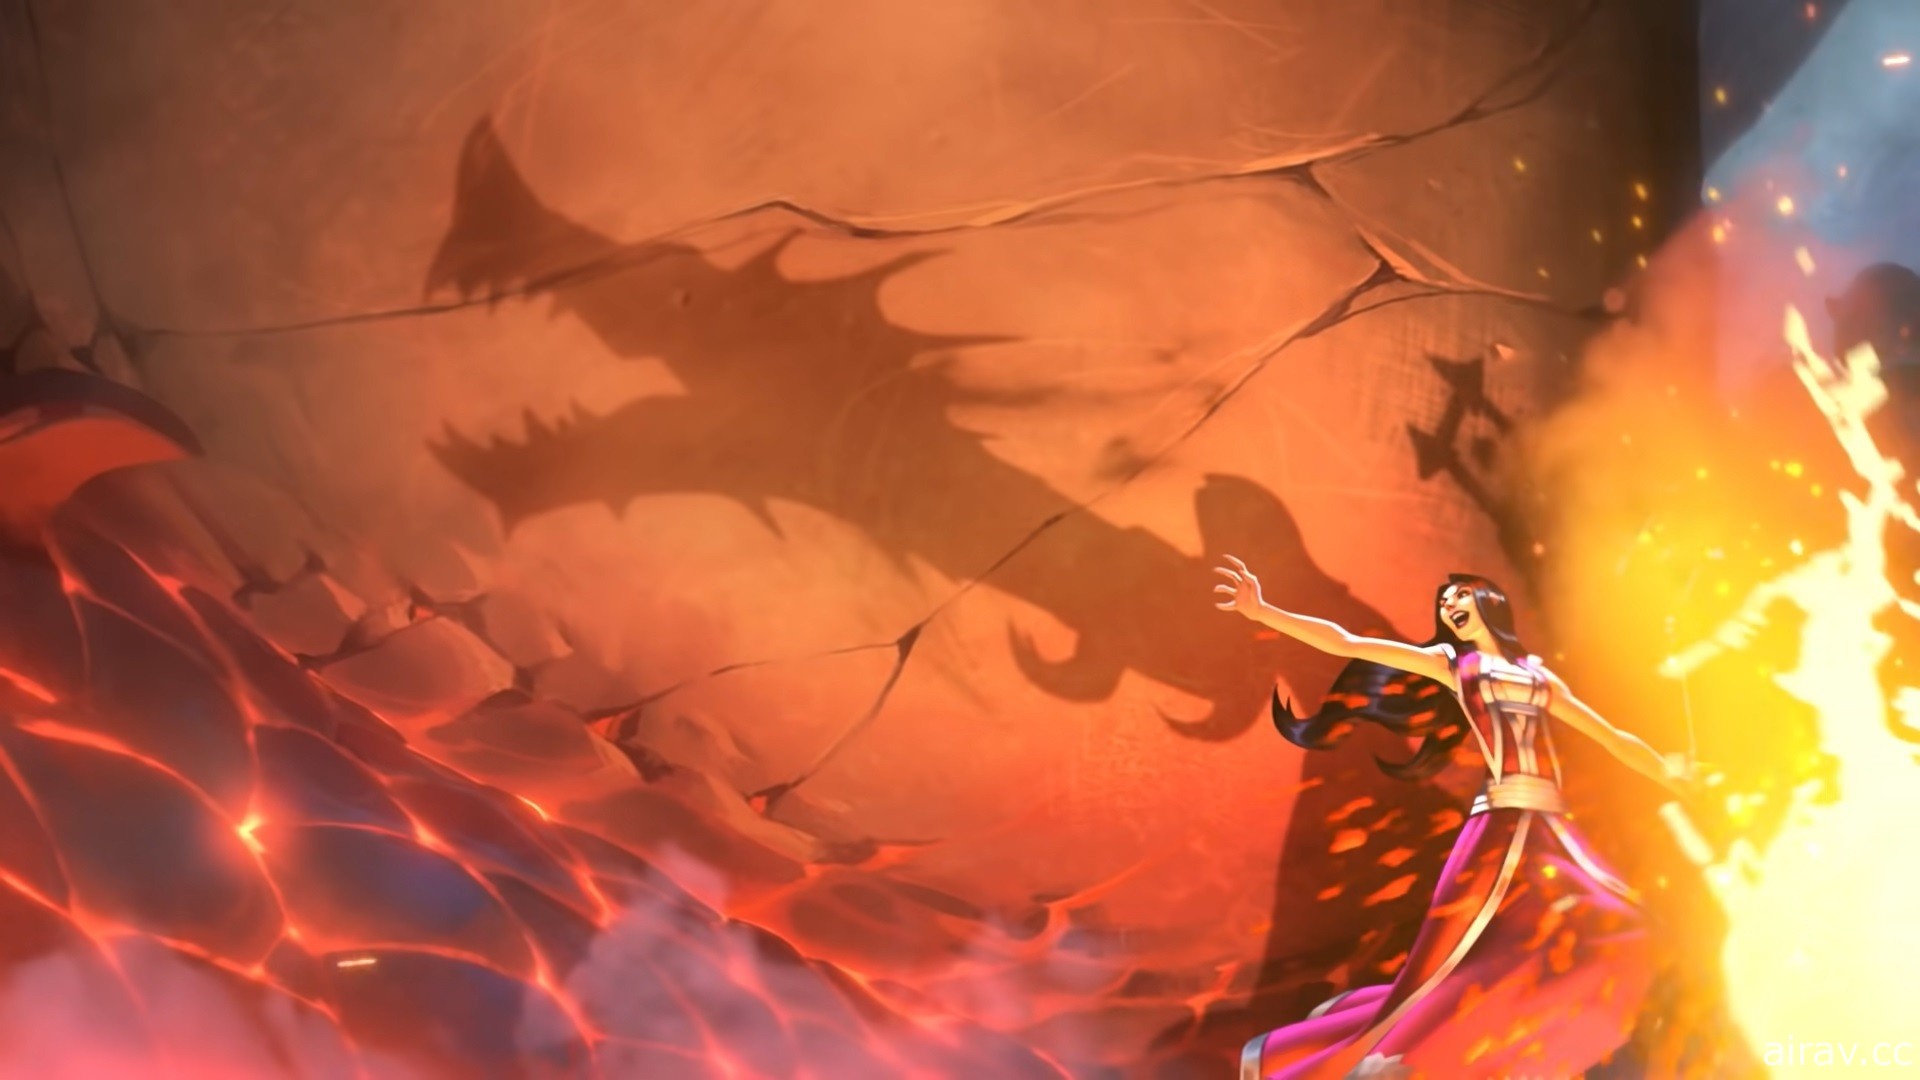 《爐石戰記》16 日將更新全新迷你系列《奧妮克希亞的巢穴》 釋出動畫預告片